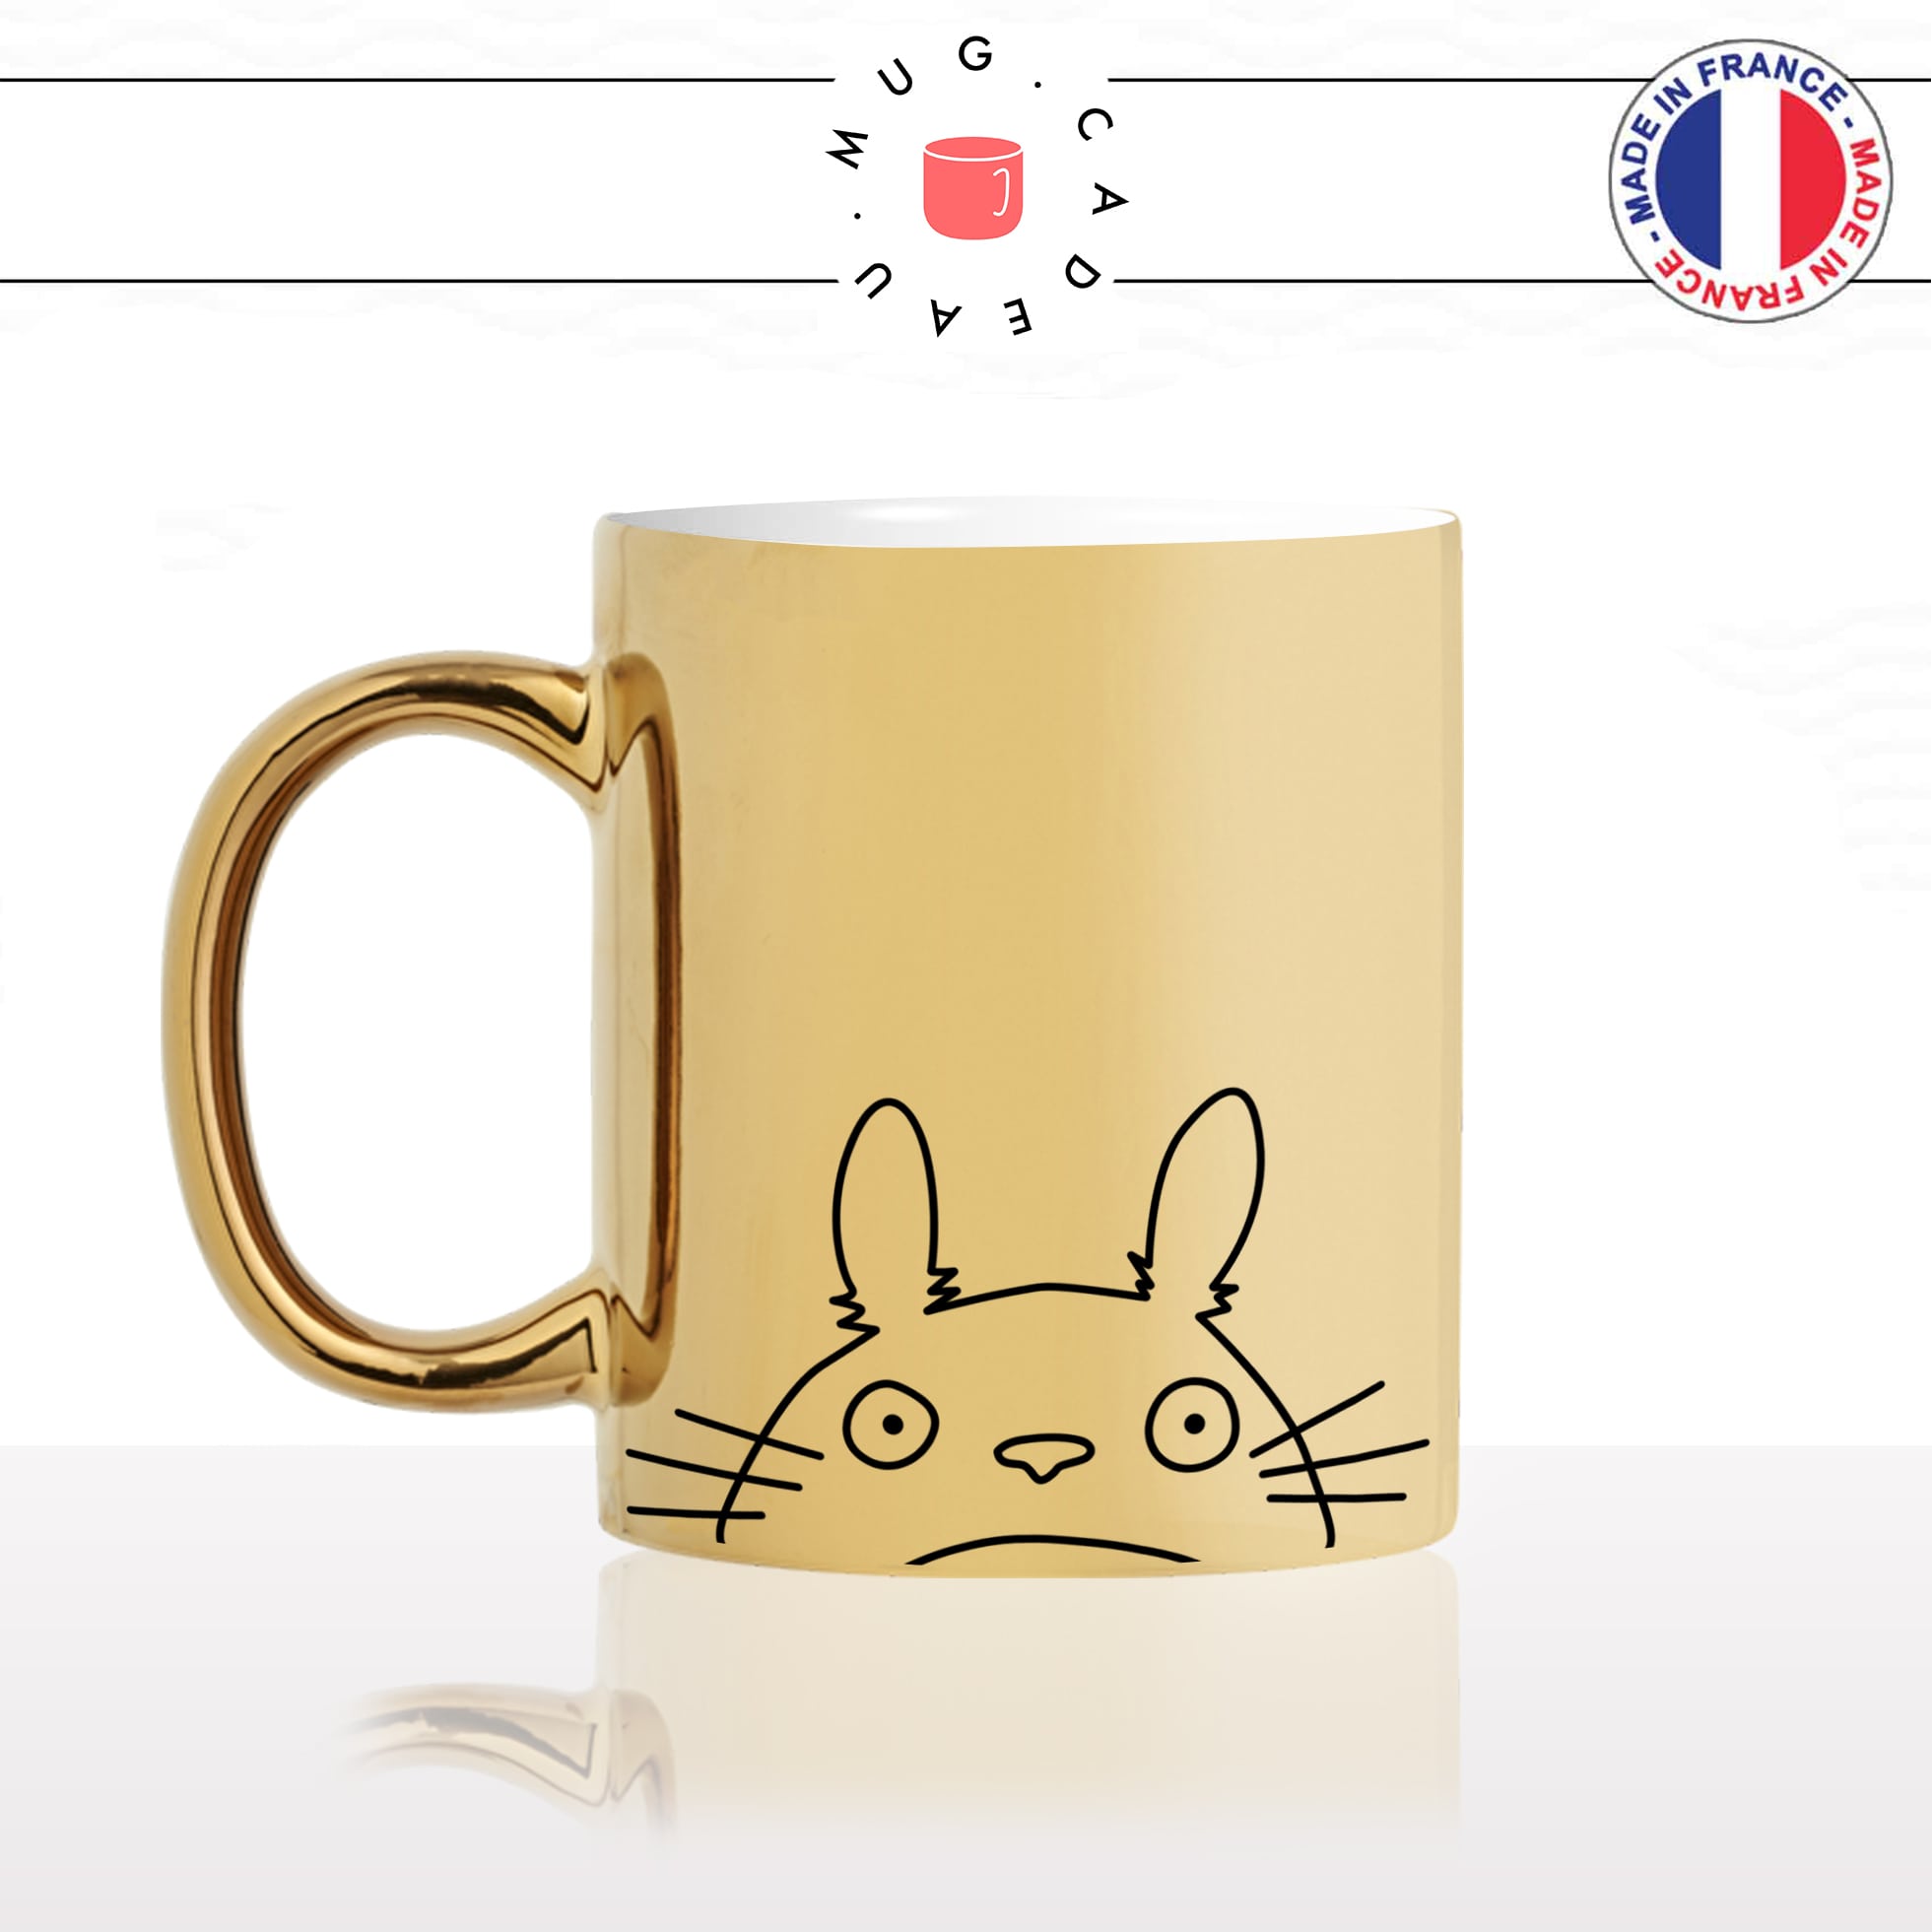 mug-tasse-doré-or-gold-totoro-japonais-mon-ami-travail-collegue-copine-dessin-animé-humour-fun-idée-cadeau-personnalisé-café-thé-min